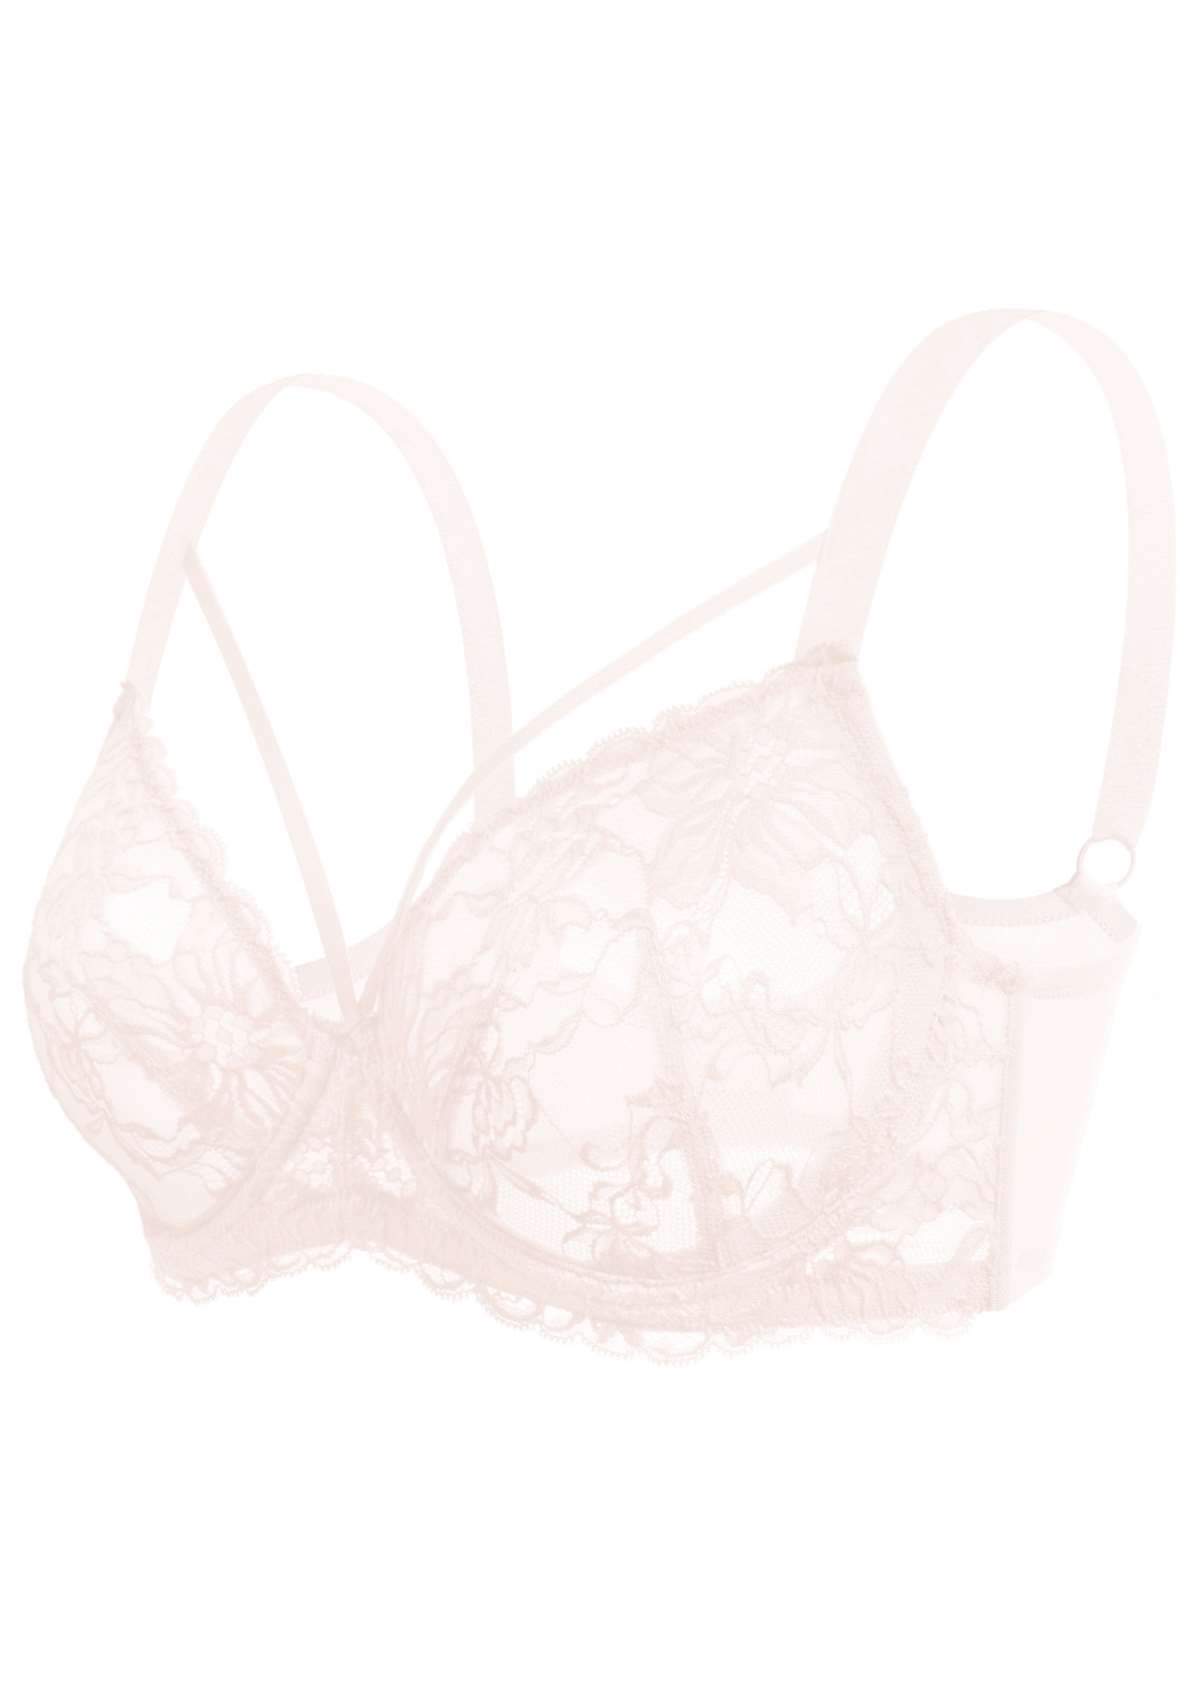 HSIA Pretty In Petals Underwire Lace Bra: No Padding, Full Cup Bra - Dusty Peach / 38 / D